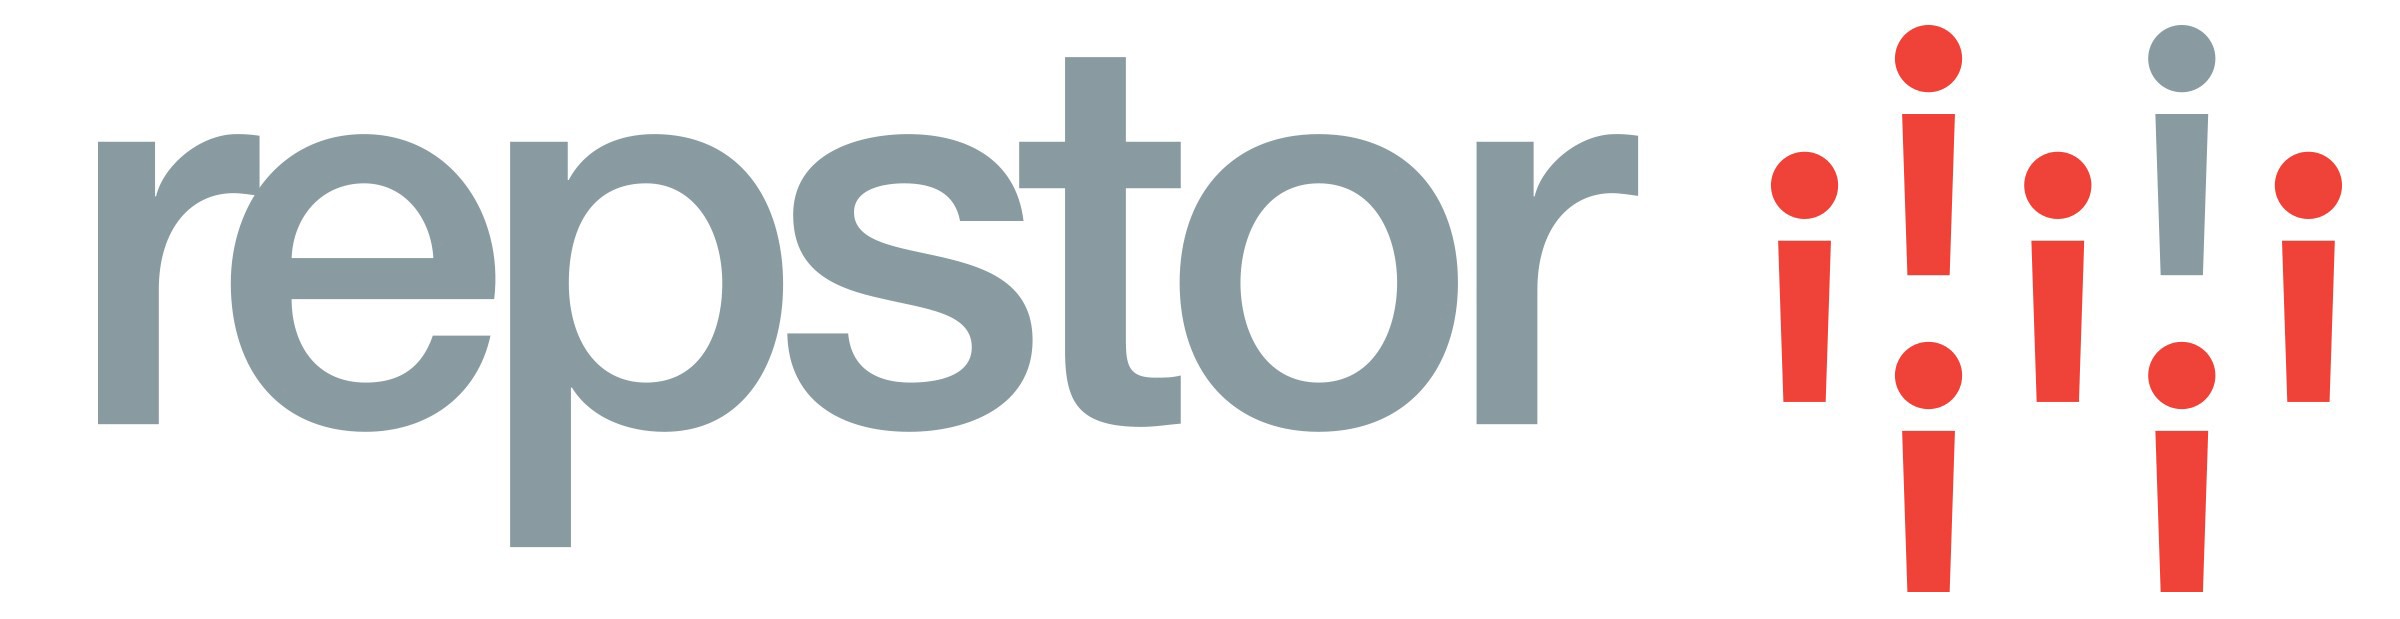 Repstor logo